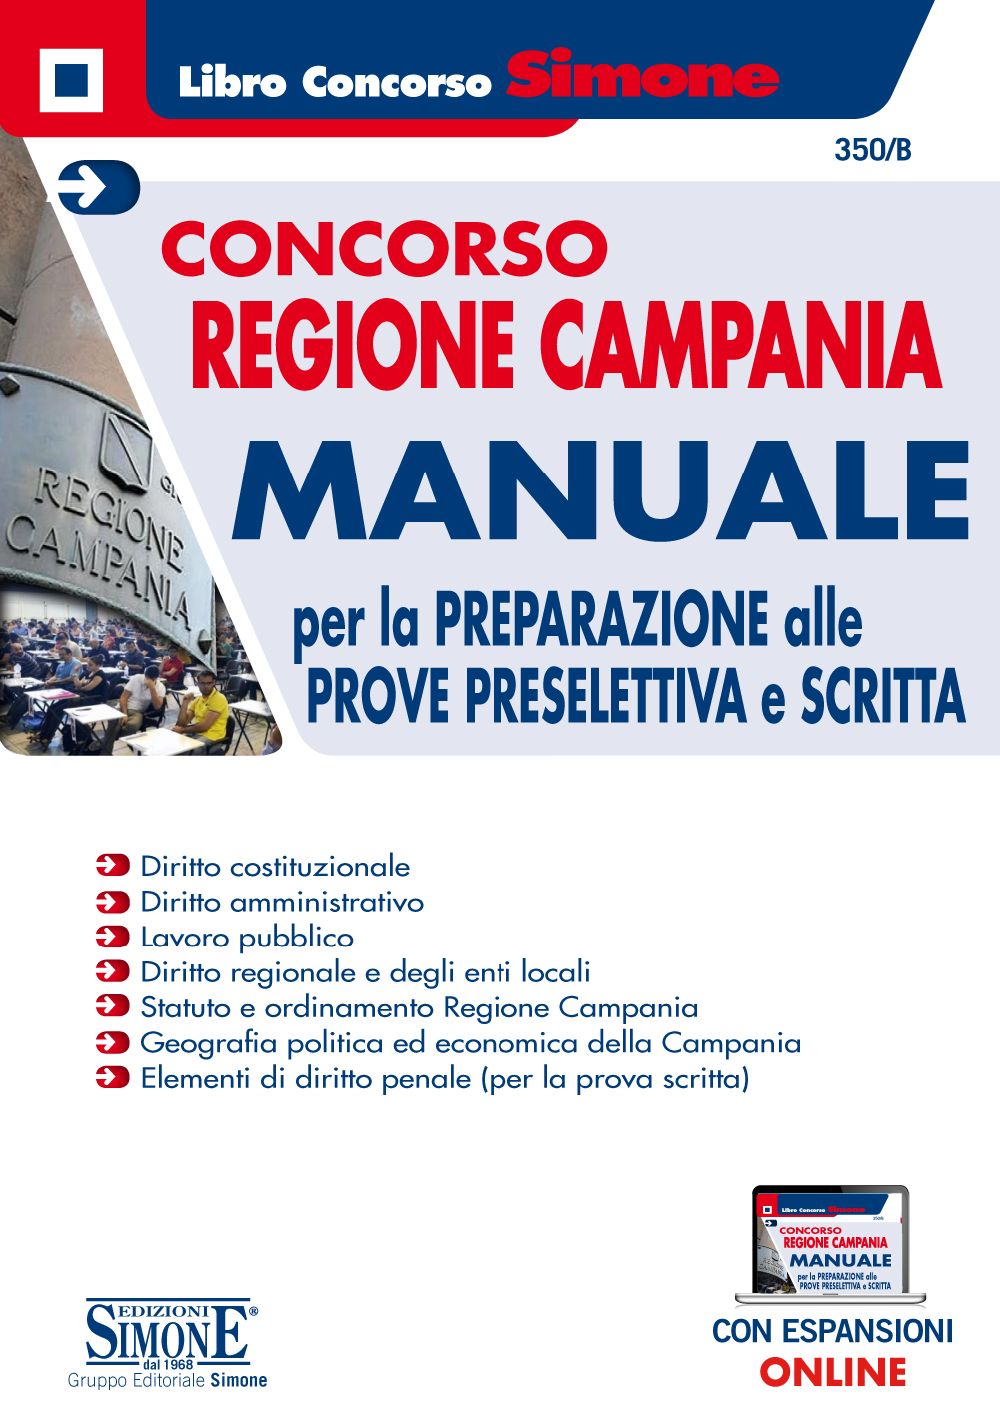 Concorso Regione Campania - Manuale per la preparazione alle prove preselettiva e scritta